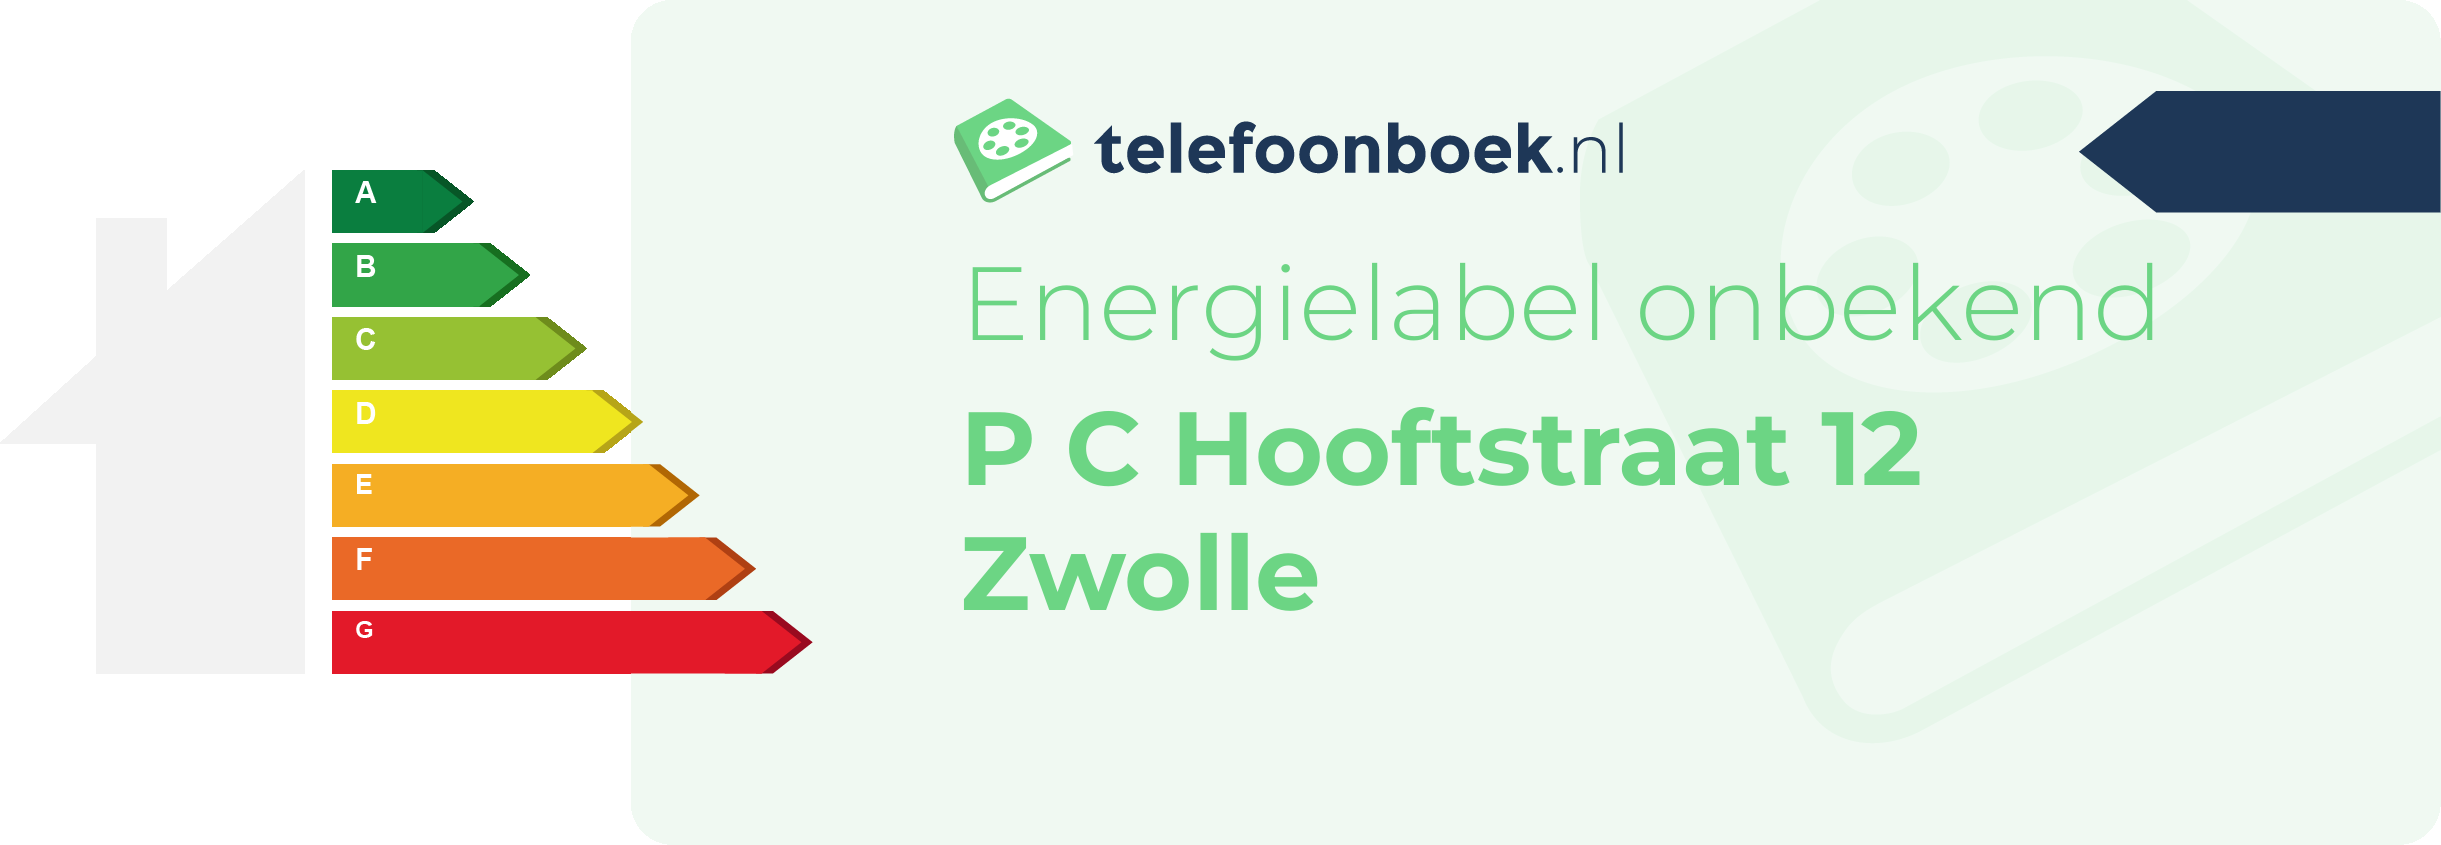 Energielabel P C Hooftstraat 12 Zwolle